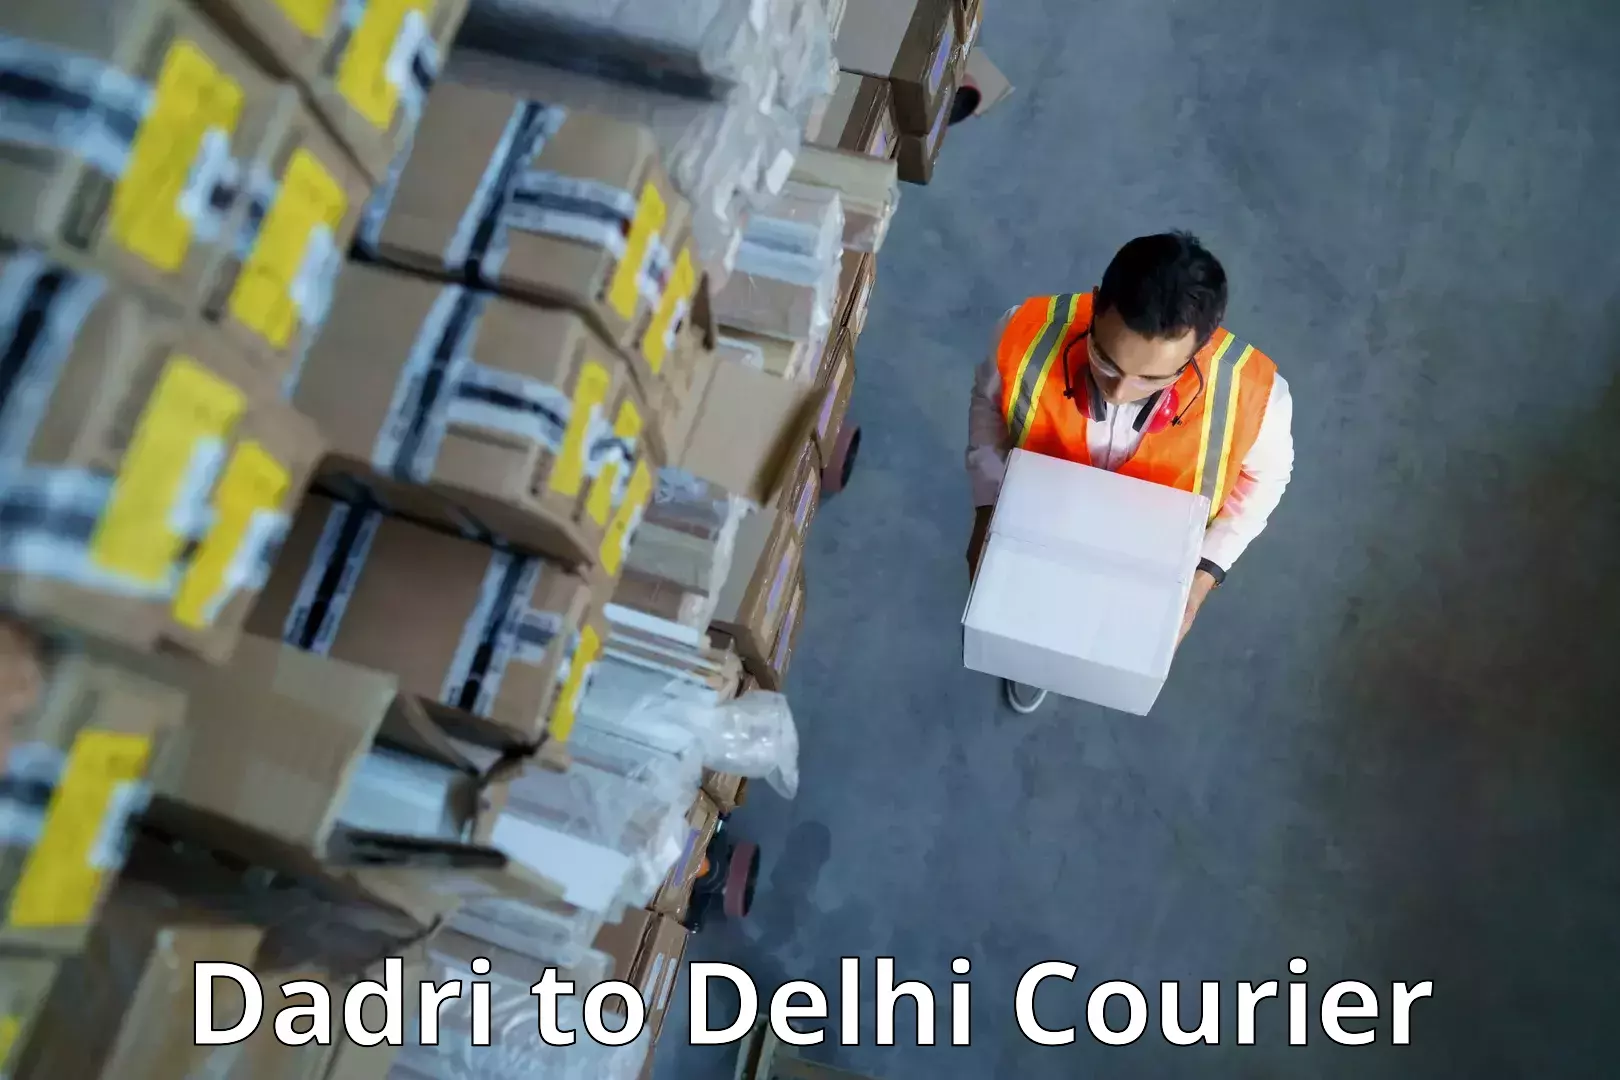 Reliable courier service Dadri to Delhi